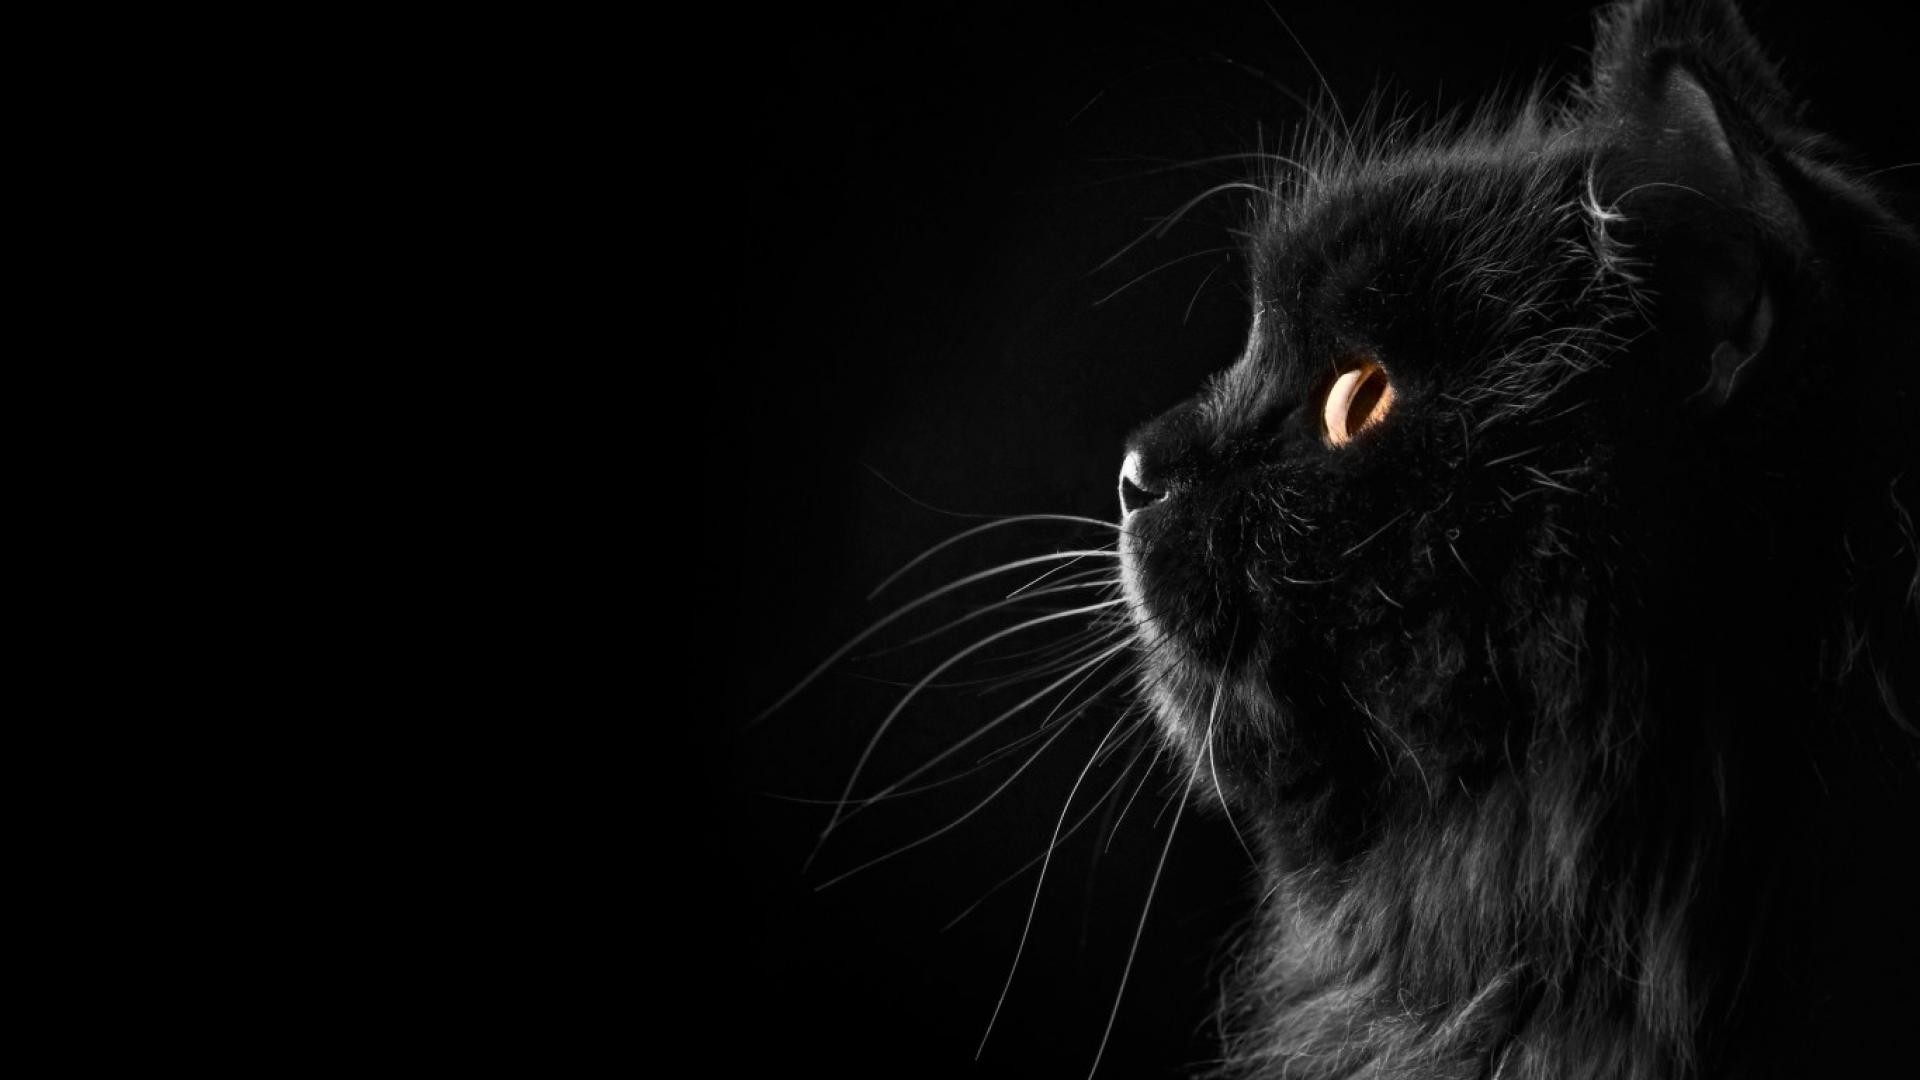 Black Cat: Chế độ ánh sáng yếu, tạo nên bầu không khí u ám và bí ẩn, đó chính là loài mèo đen. Bạn có muốn khám phá vẻ đẹp của những chú mèo đen thông minh, nhanh nhẹn và bí ẩn này? Hãy xem qua những hình ảnh về loài mèo đen để có những trải nghiệm thú vị nhất.